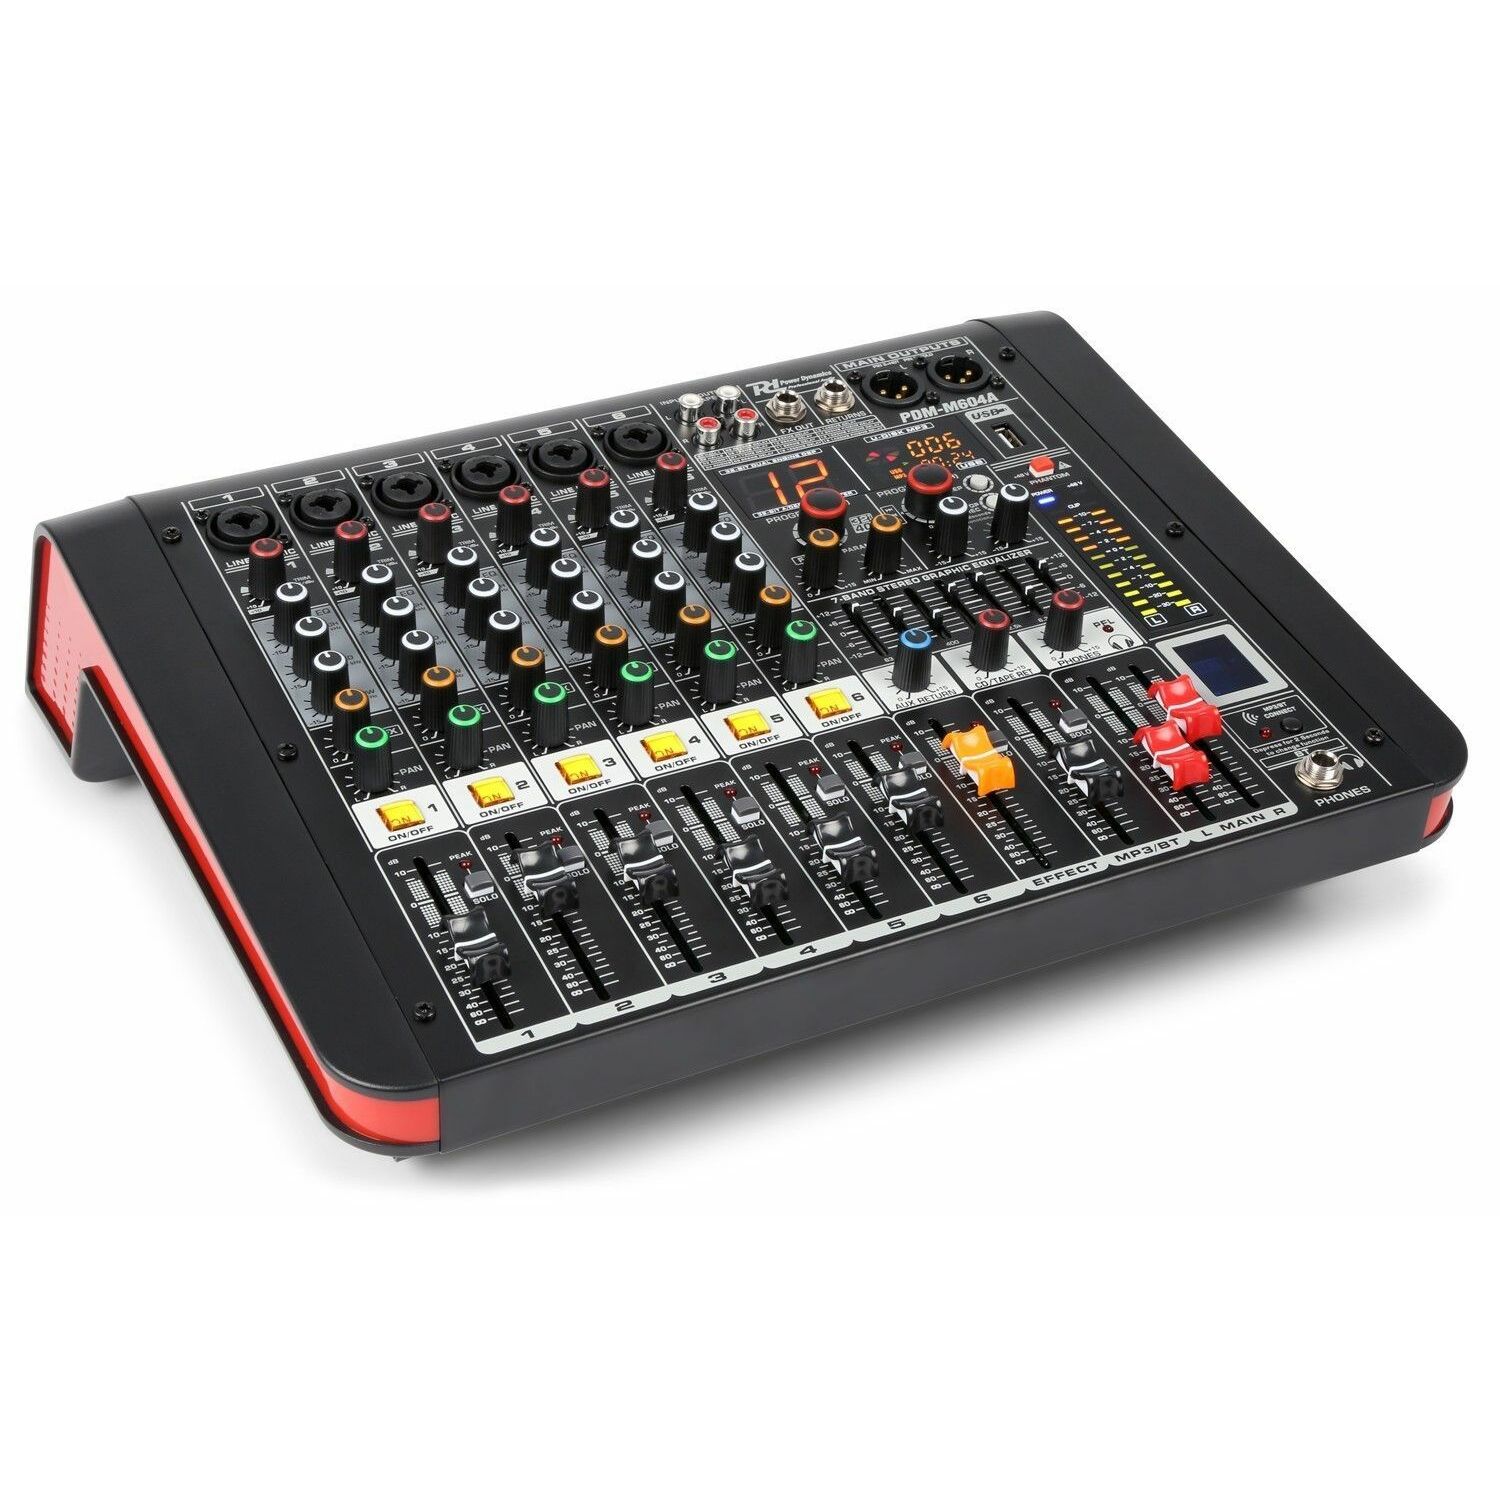 Retourdeal - Power Dynamics PDM-M604A 6 kanaals muziek mixer /